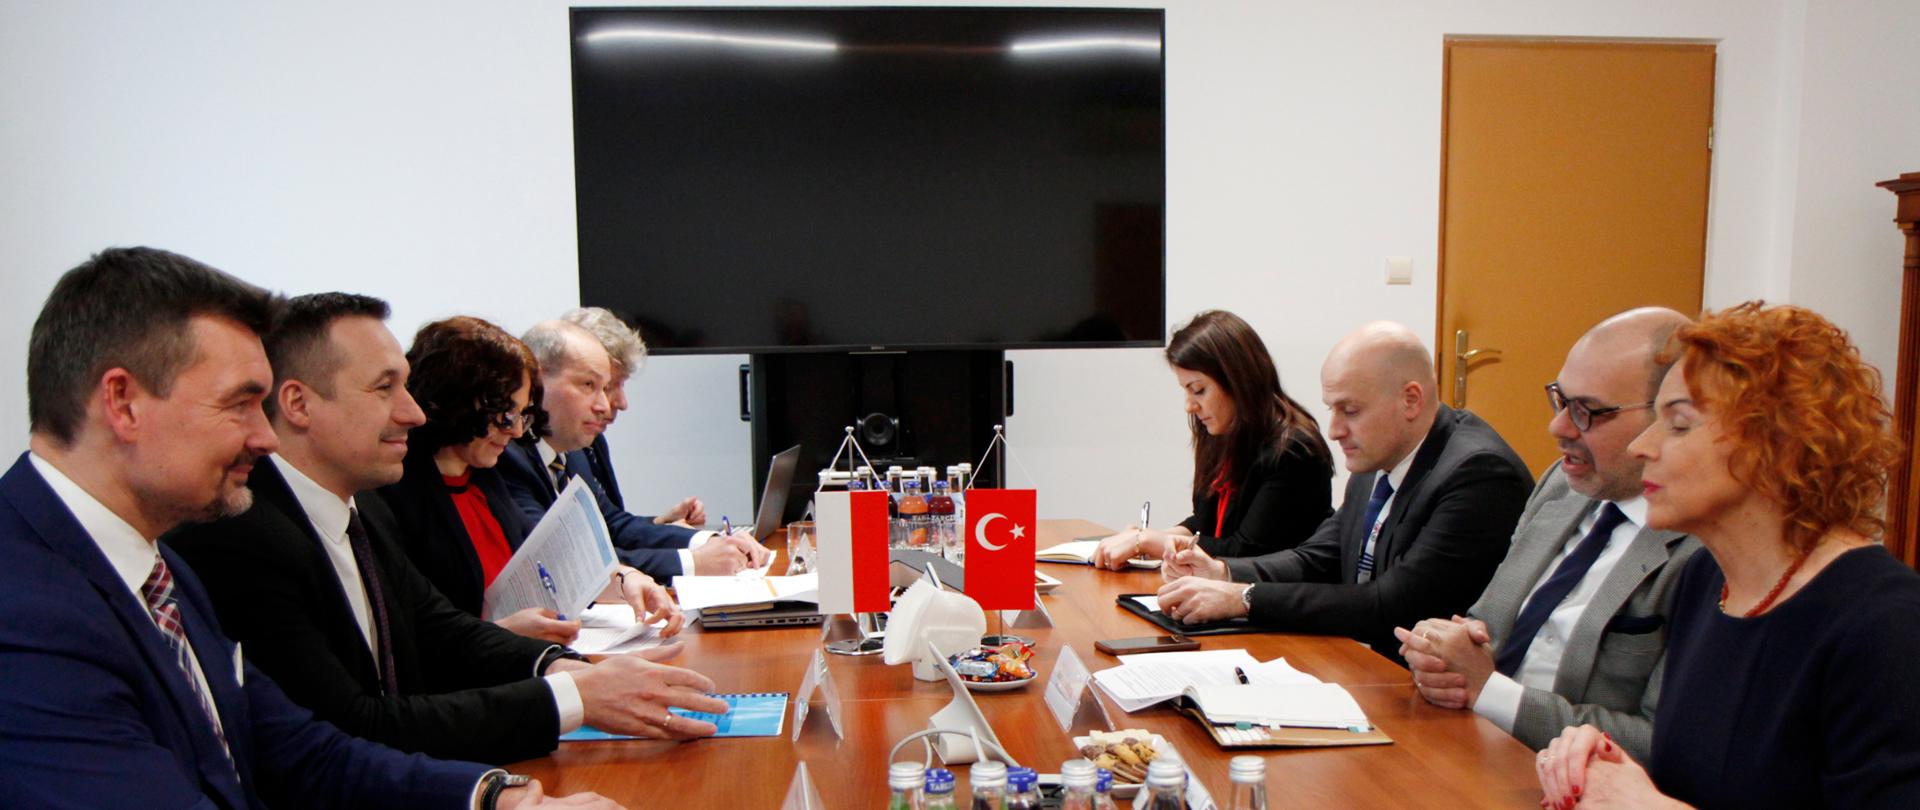 Wiceminister infrastruktury Paweł Gancarz w trakcie spotkania z ambasadorem Turcji w Warszawie, Raufem Alp Denktaşem